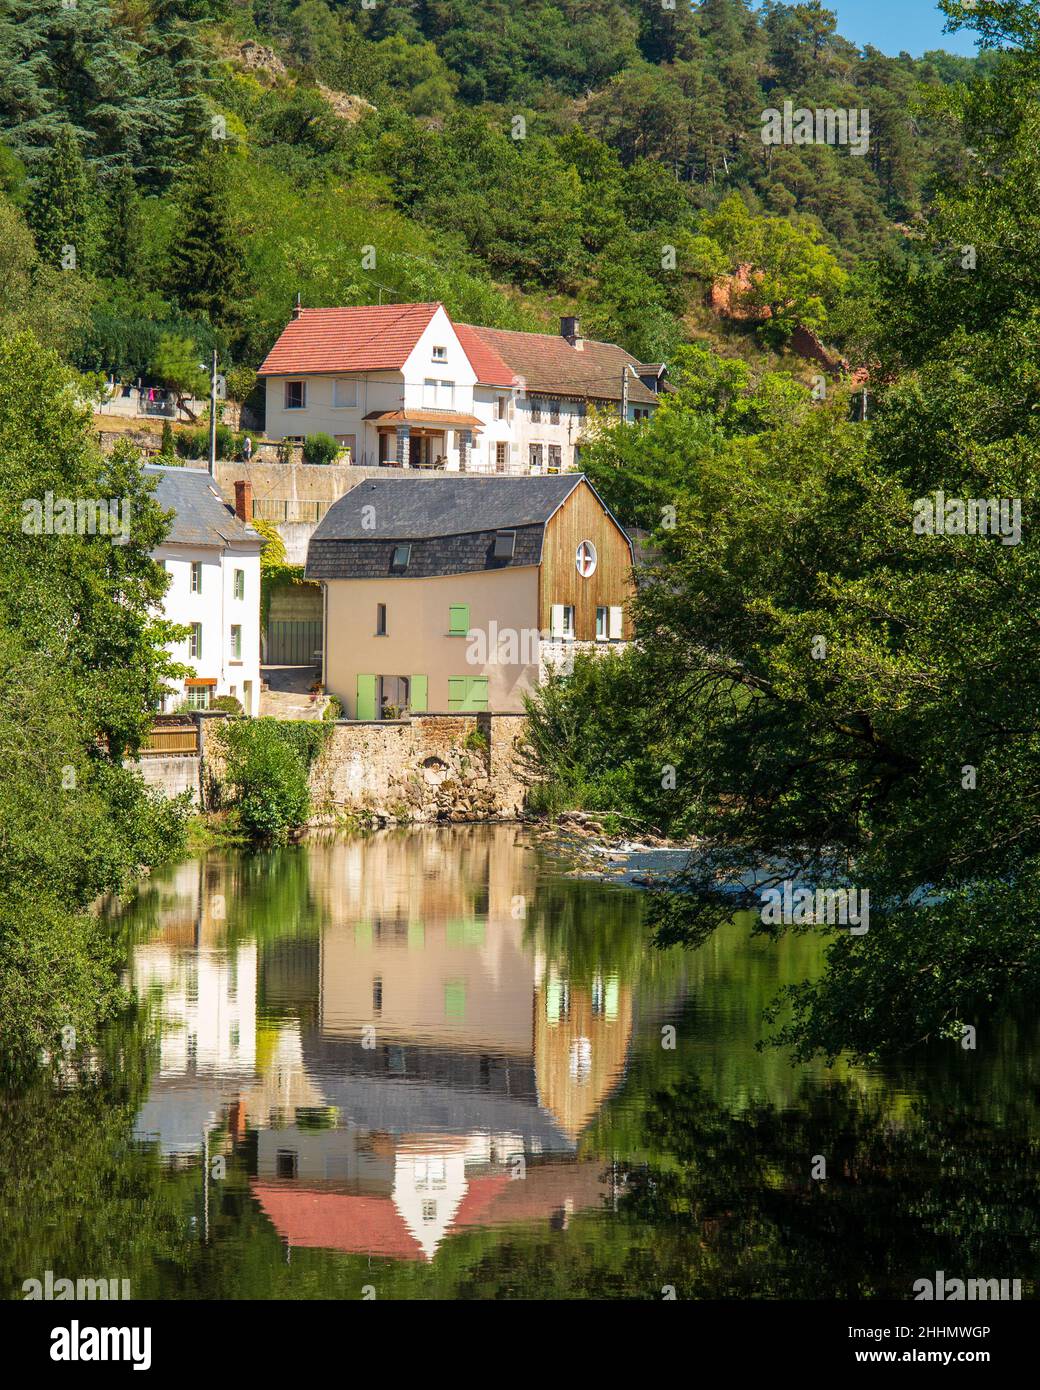 La ciudad balneario de Chateauneuf-les-Bains en las orillas del río Sioule en el cantón de Manzat, Pays de Combrailles en el departamento de Puy-de-Dome Foto de stock